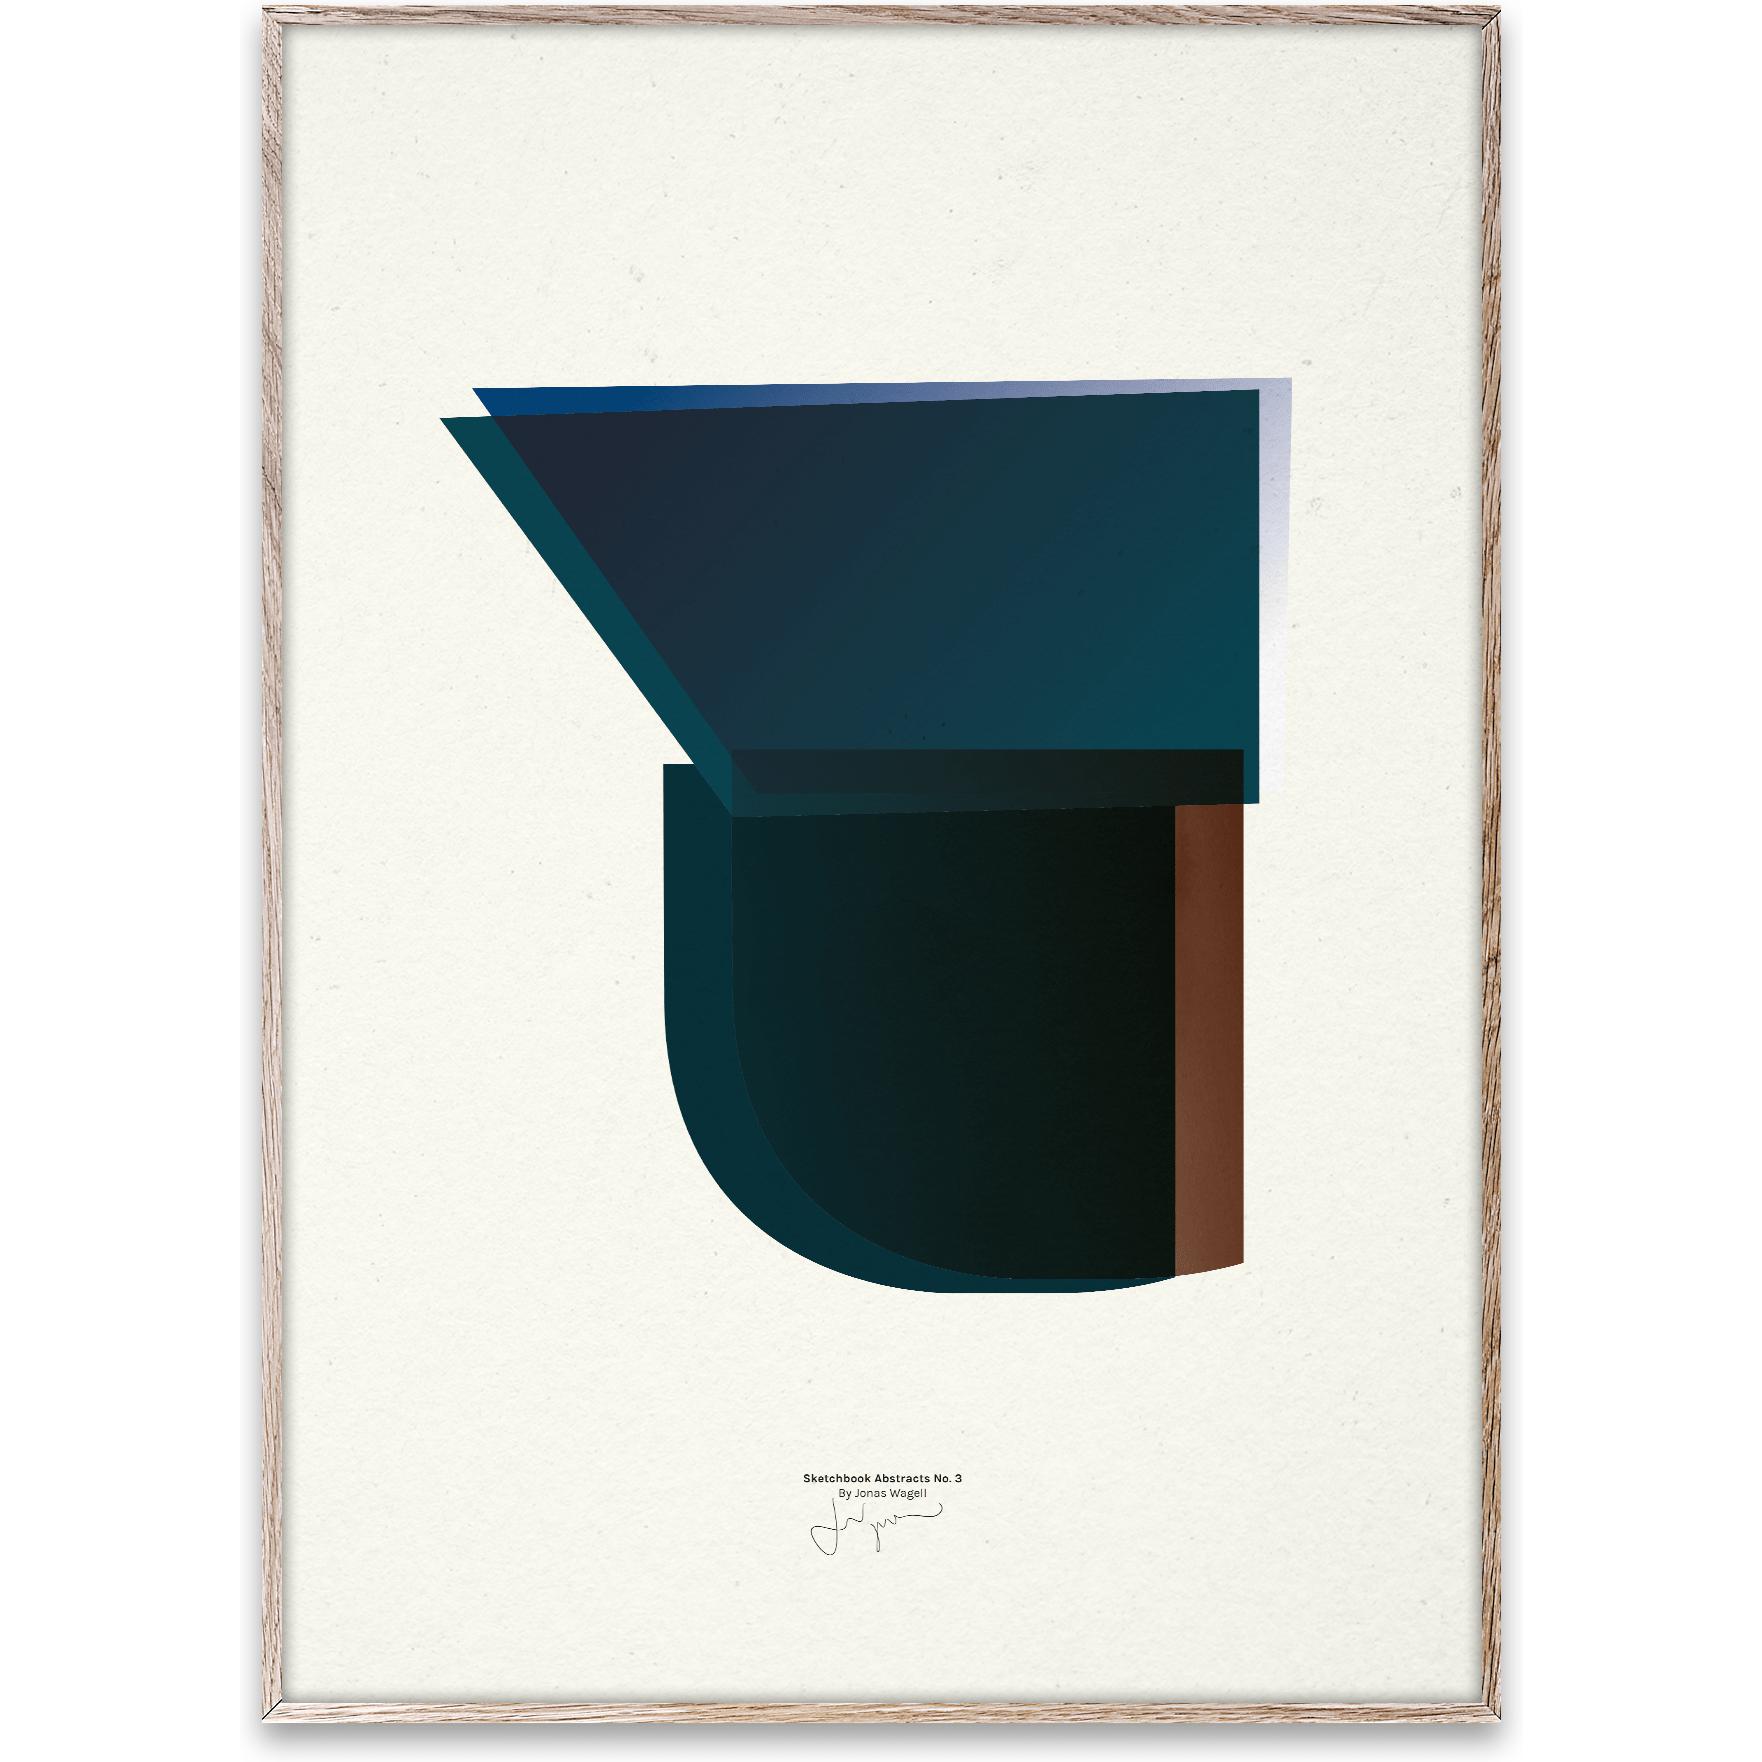 Paper Collective Skissbok abstrakt 03 affisch, 50x70 cm